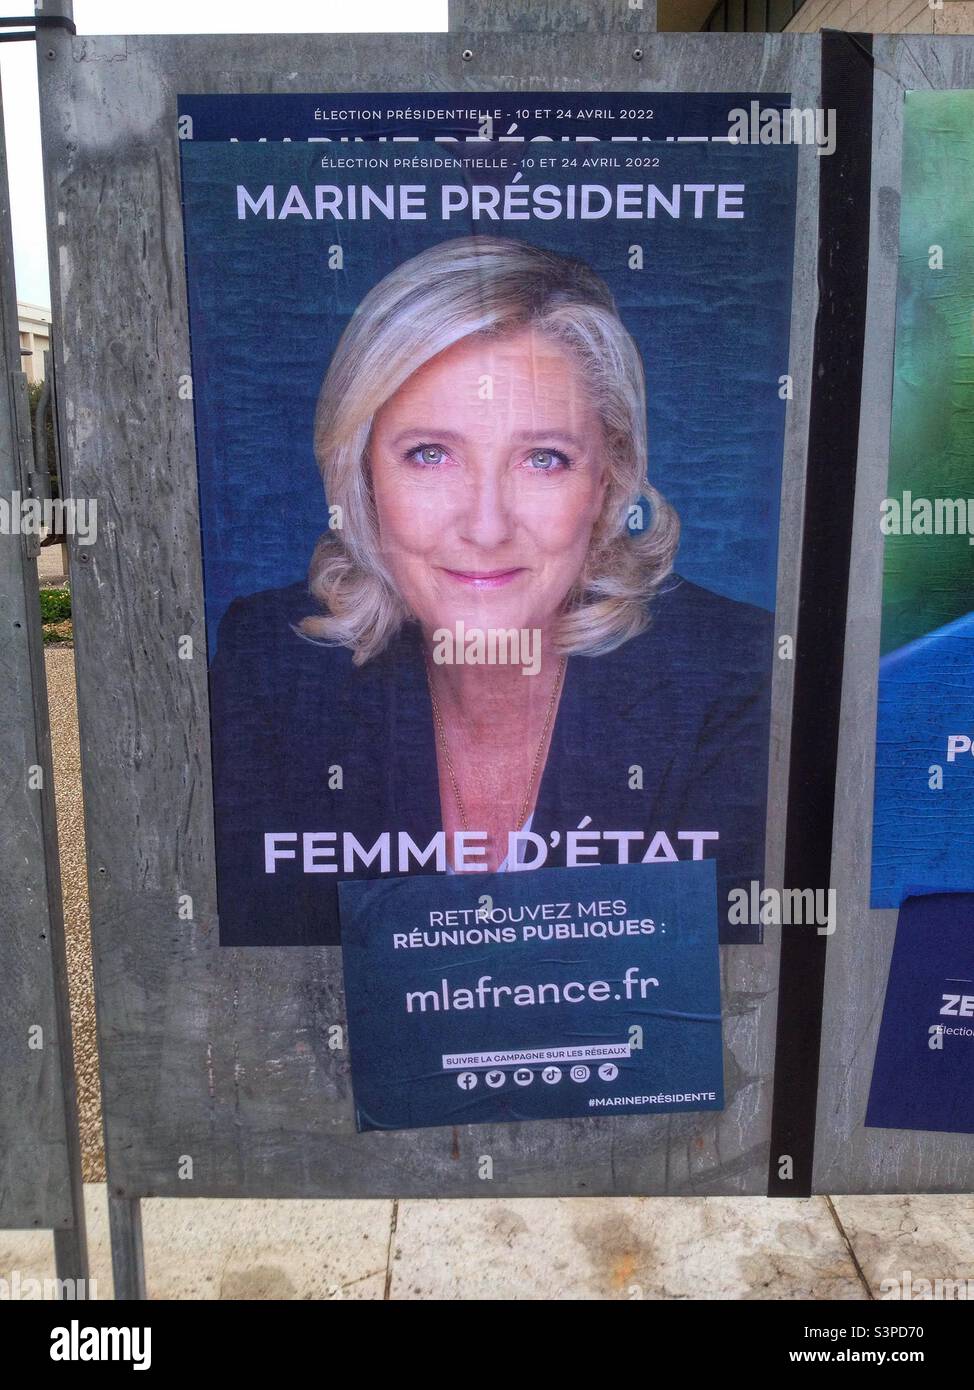 Affichage réglementaire devant un bureau de vote pour les élections présidentielles françaises Banque D'Images